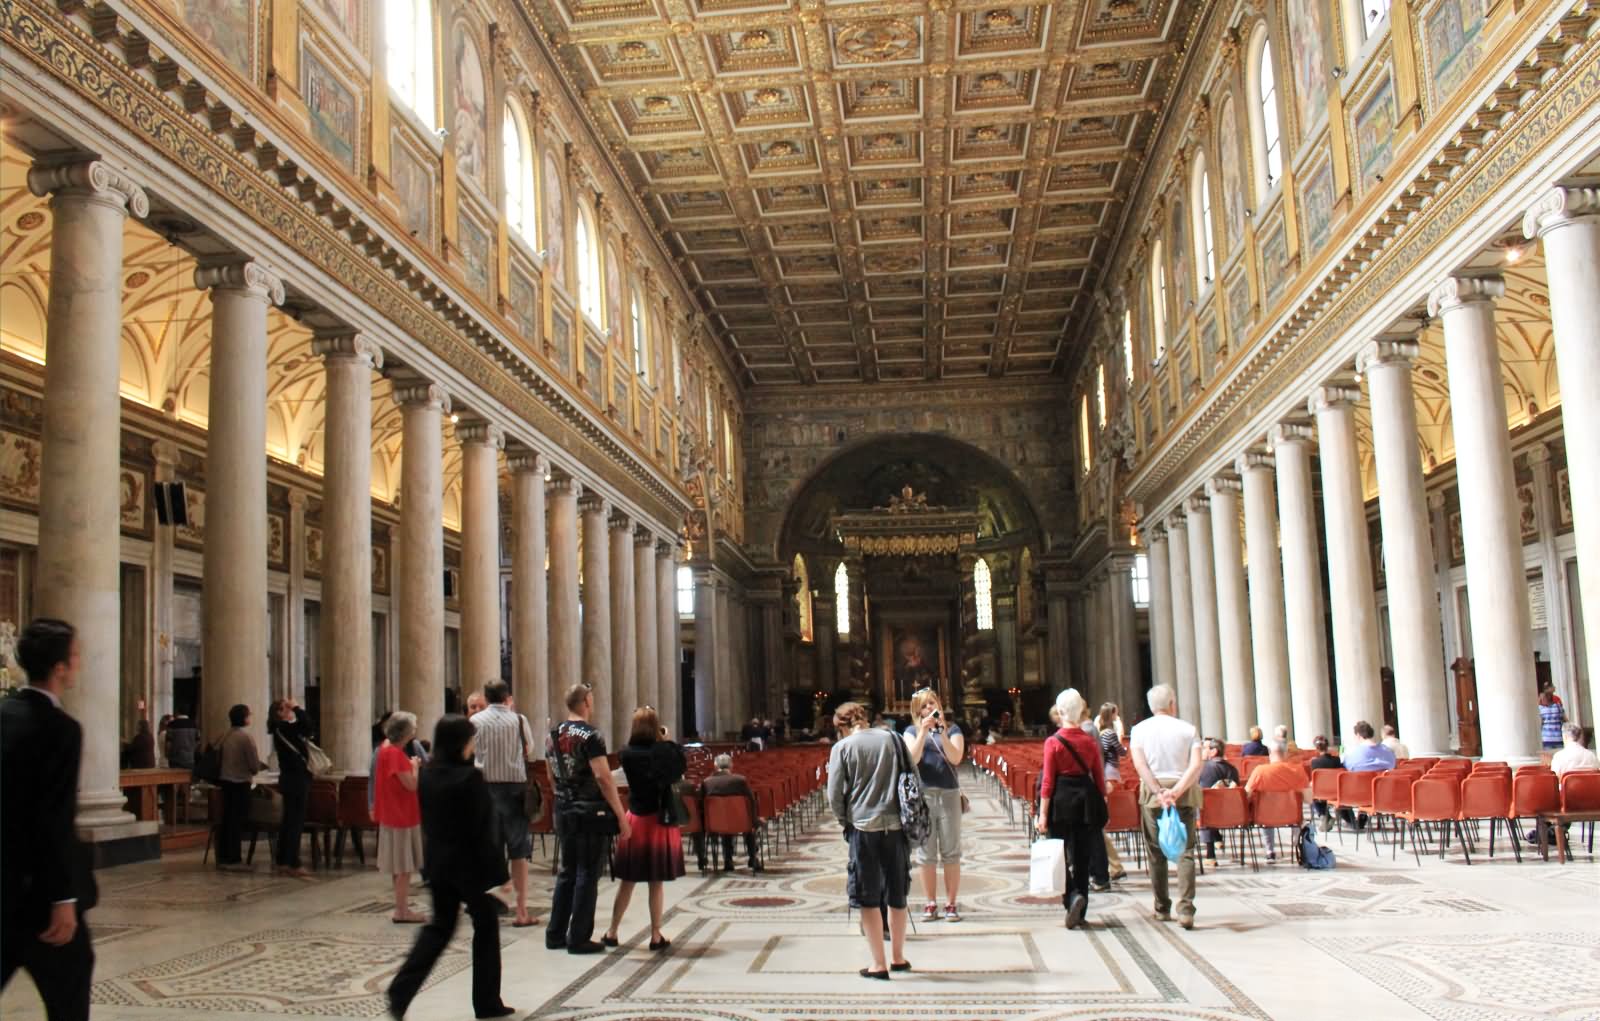 Inside Image Of Basilica di Santa Maria Maggiore